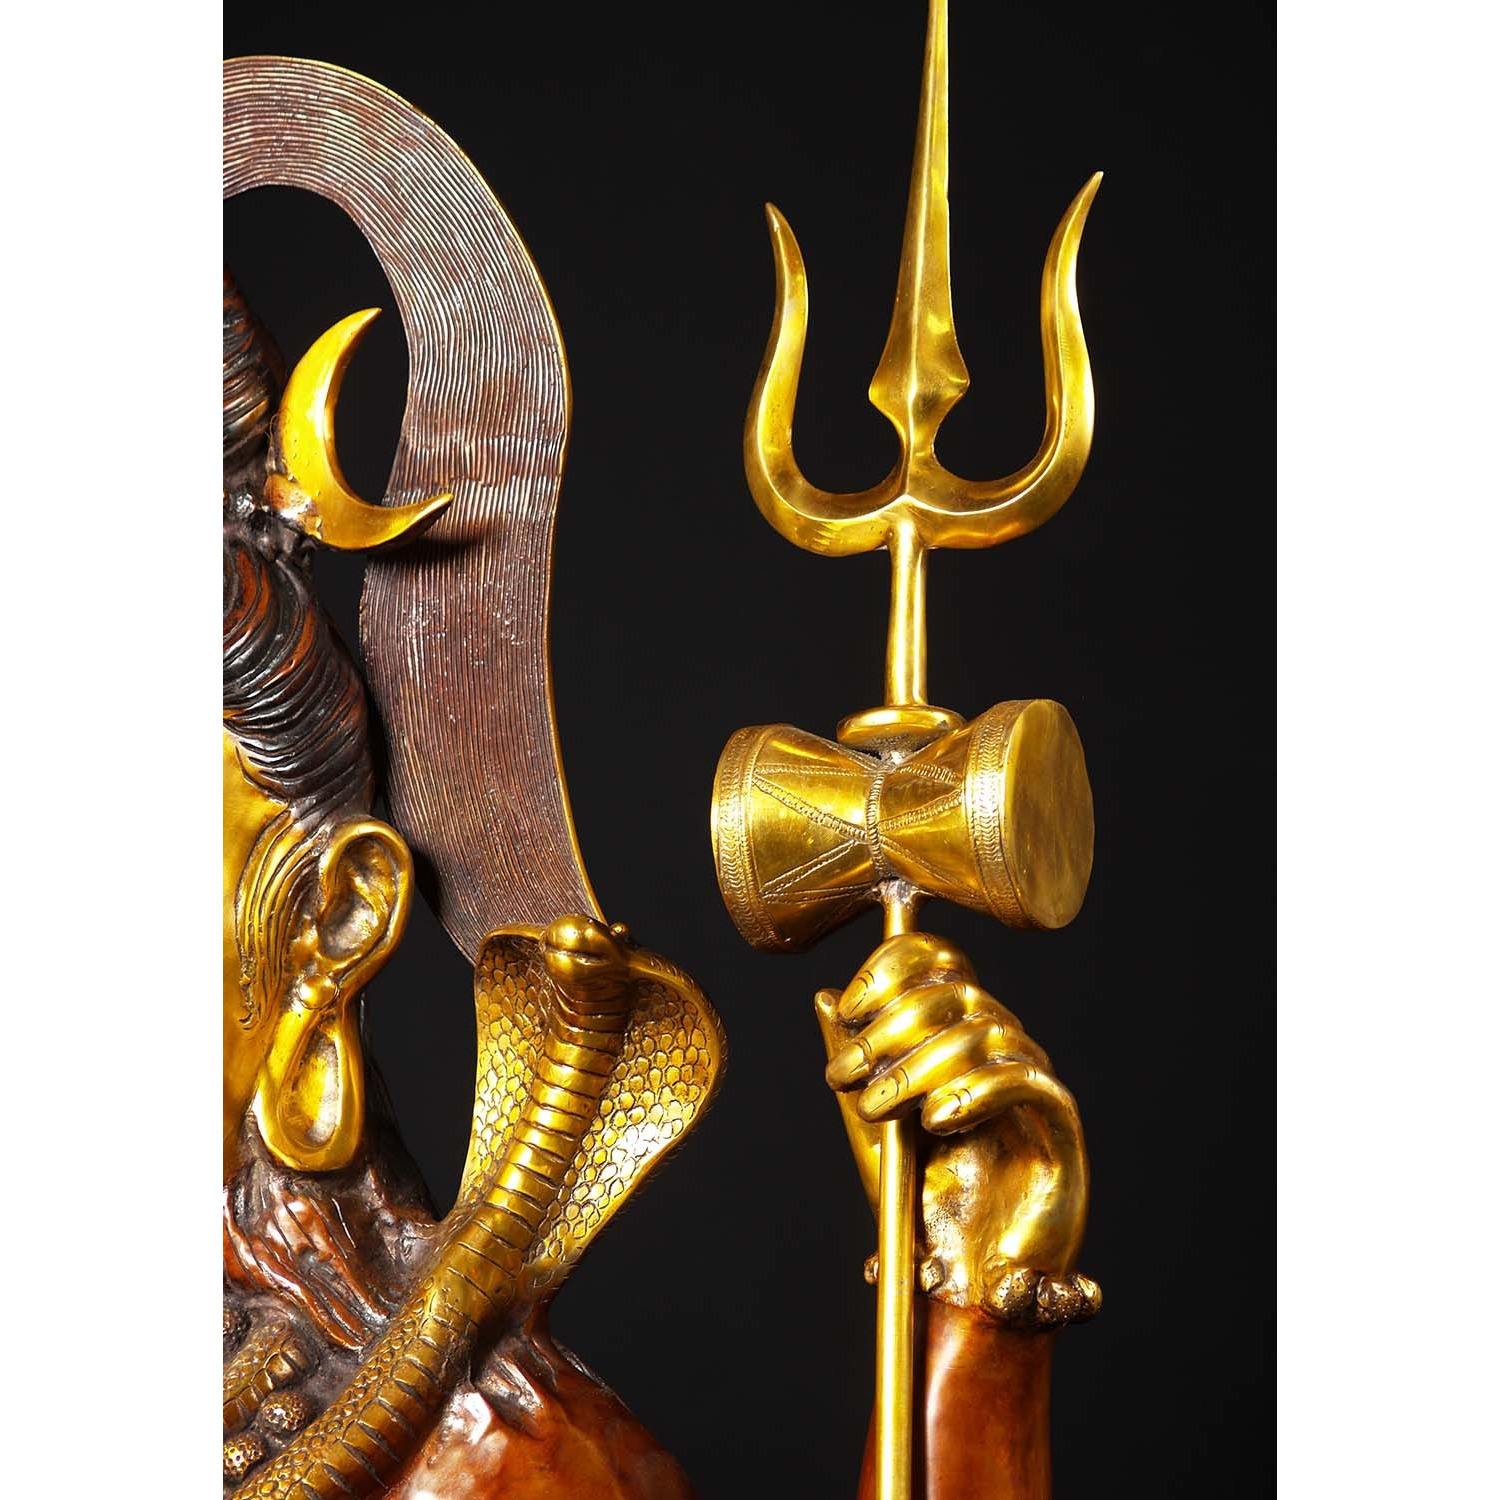 Brass Large Abhaya Mudra Shiva Statue 53 Inches